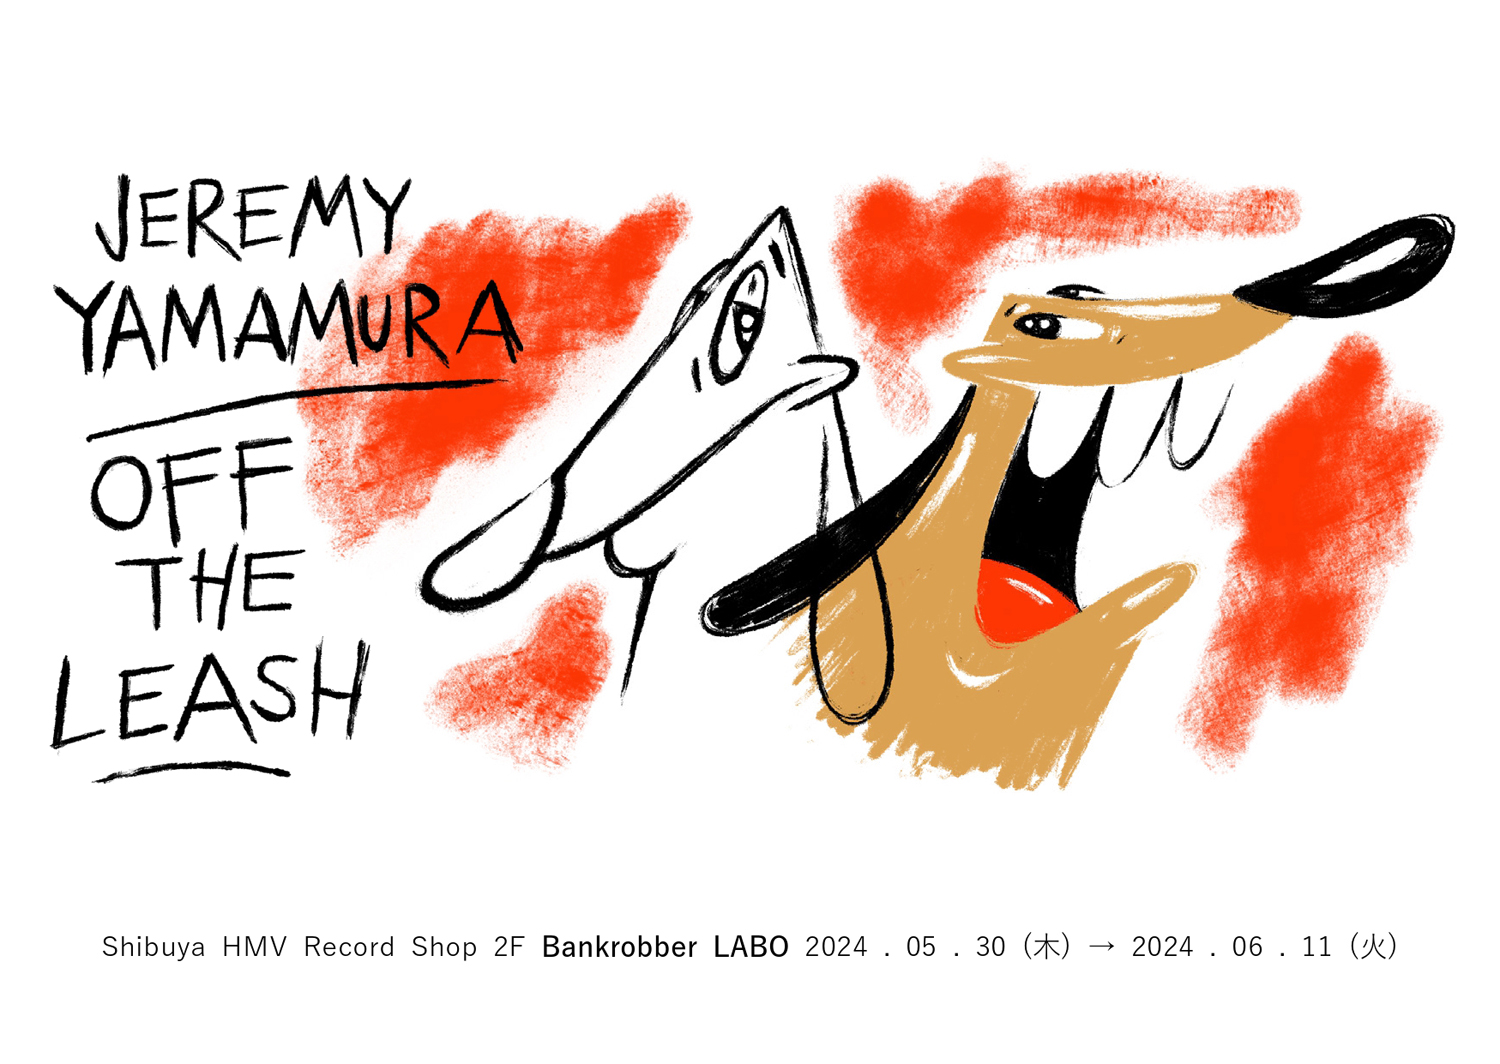 Jeremy Yamamura Exhibition "OFF THE LEASH"